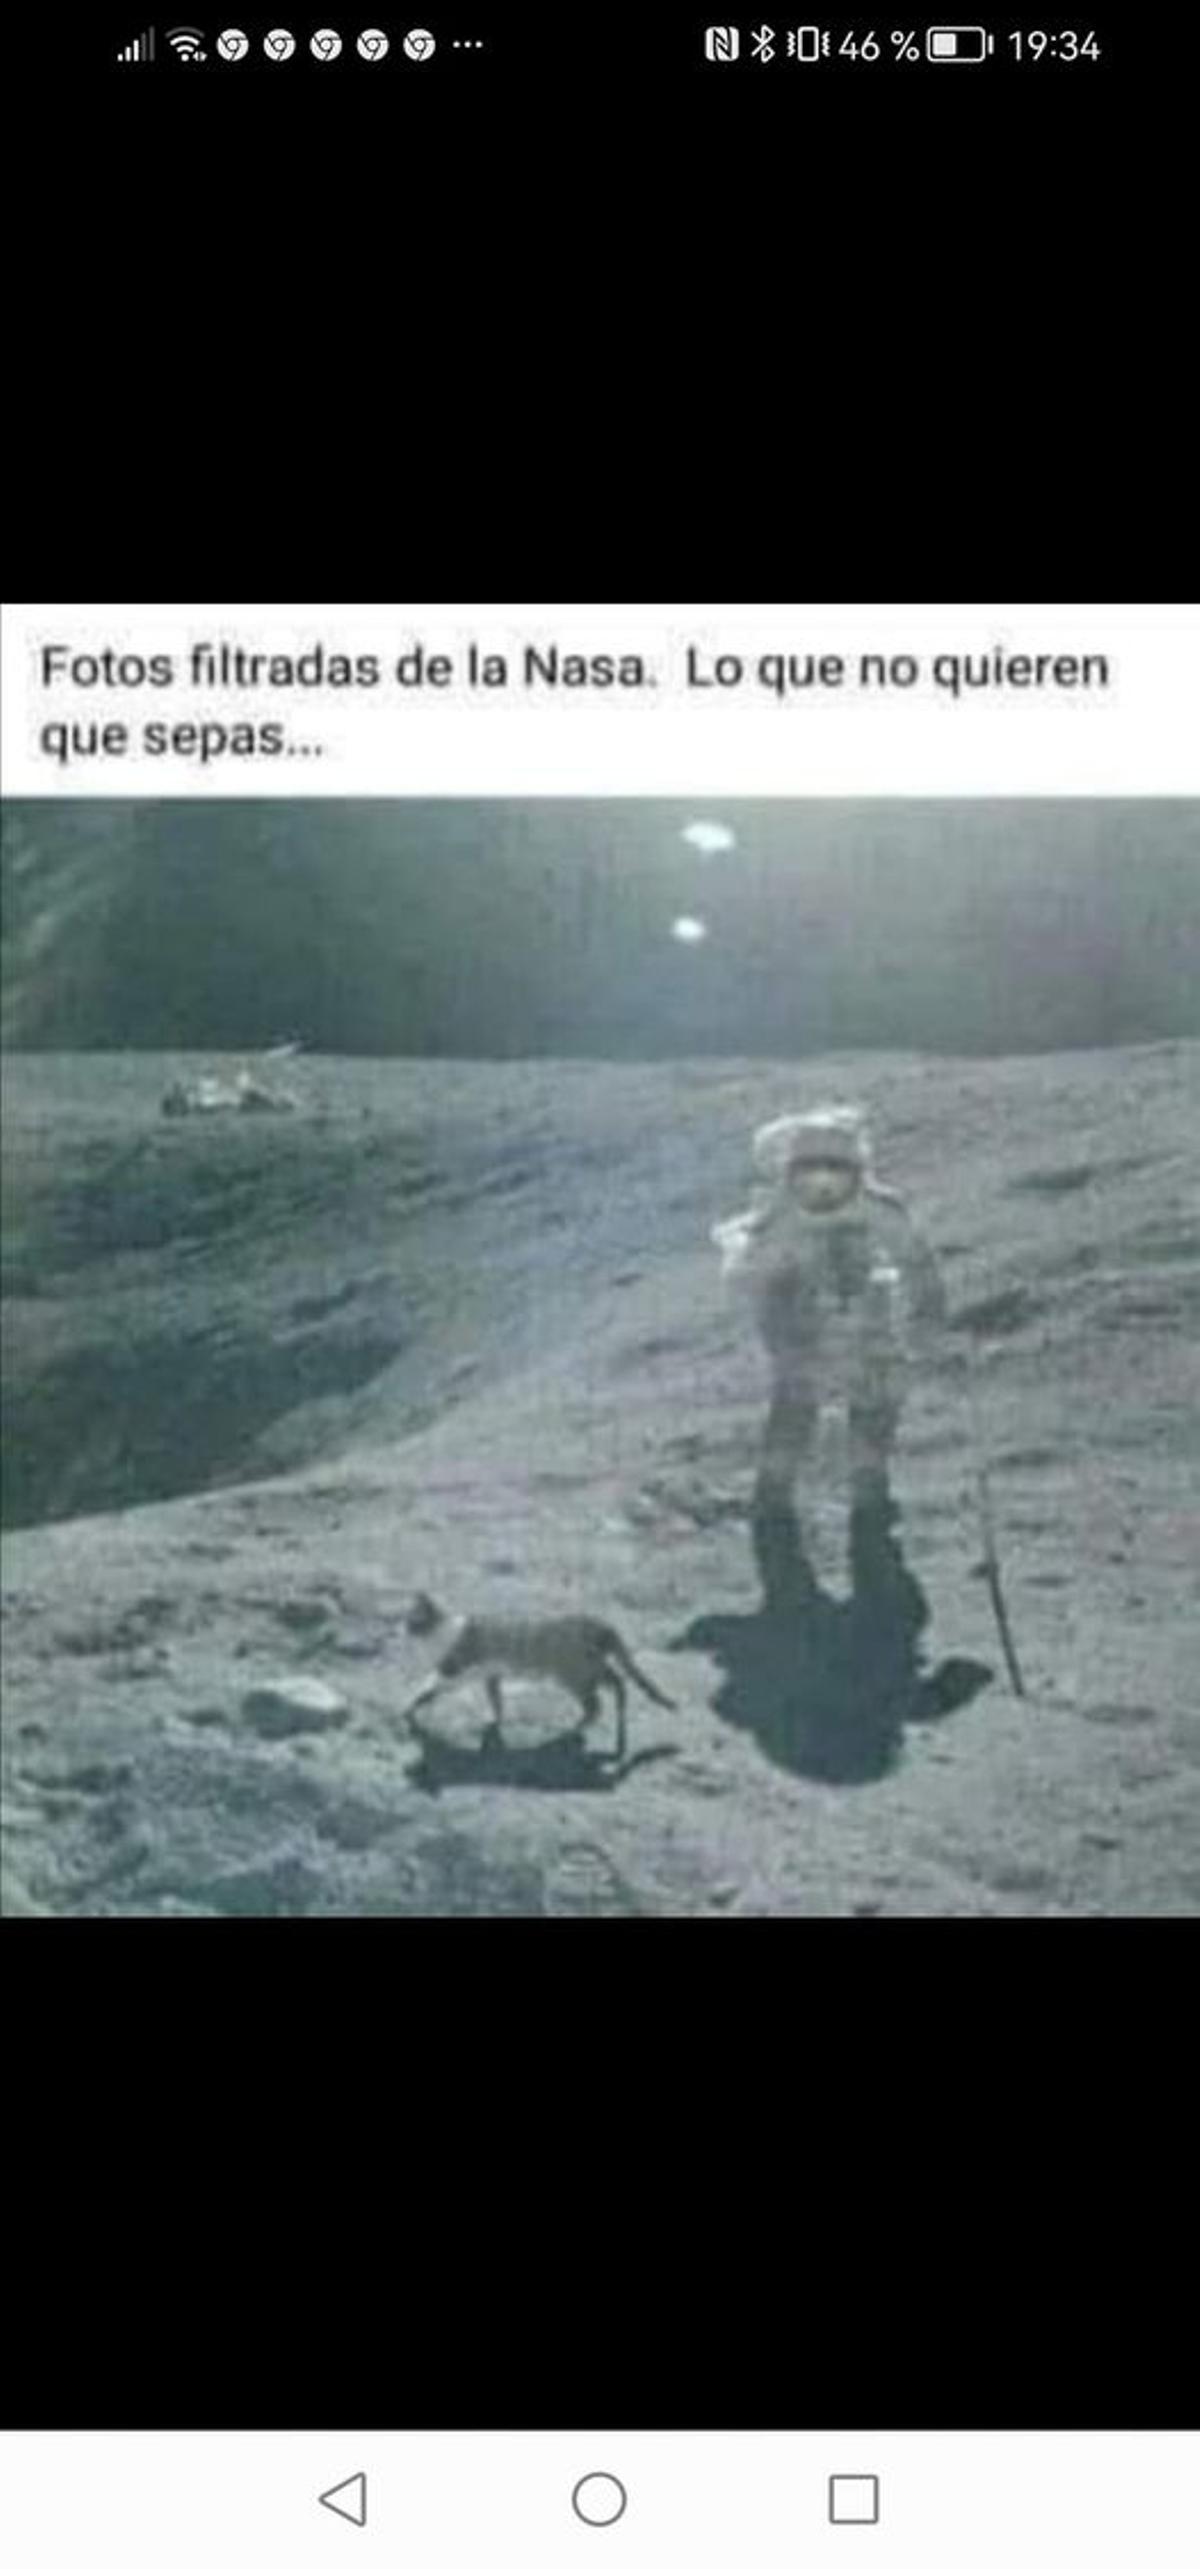 La imagen con el gato y el astronauta en la Luna.